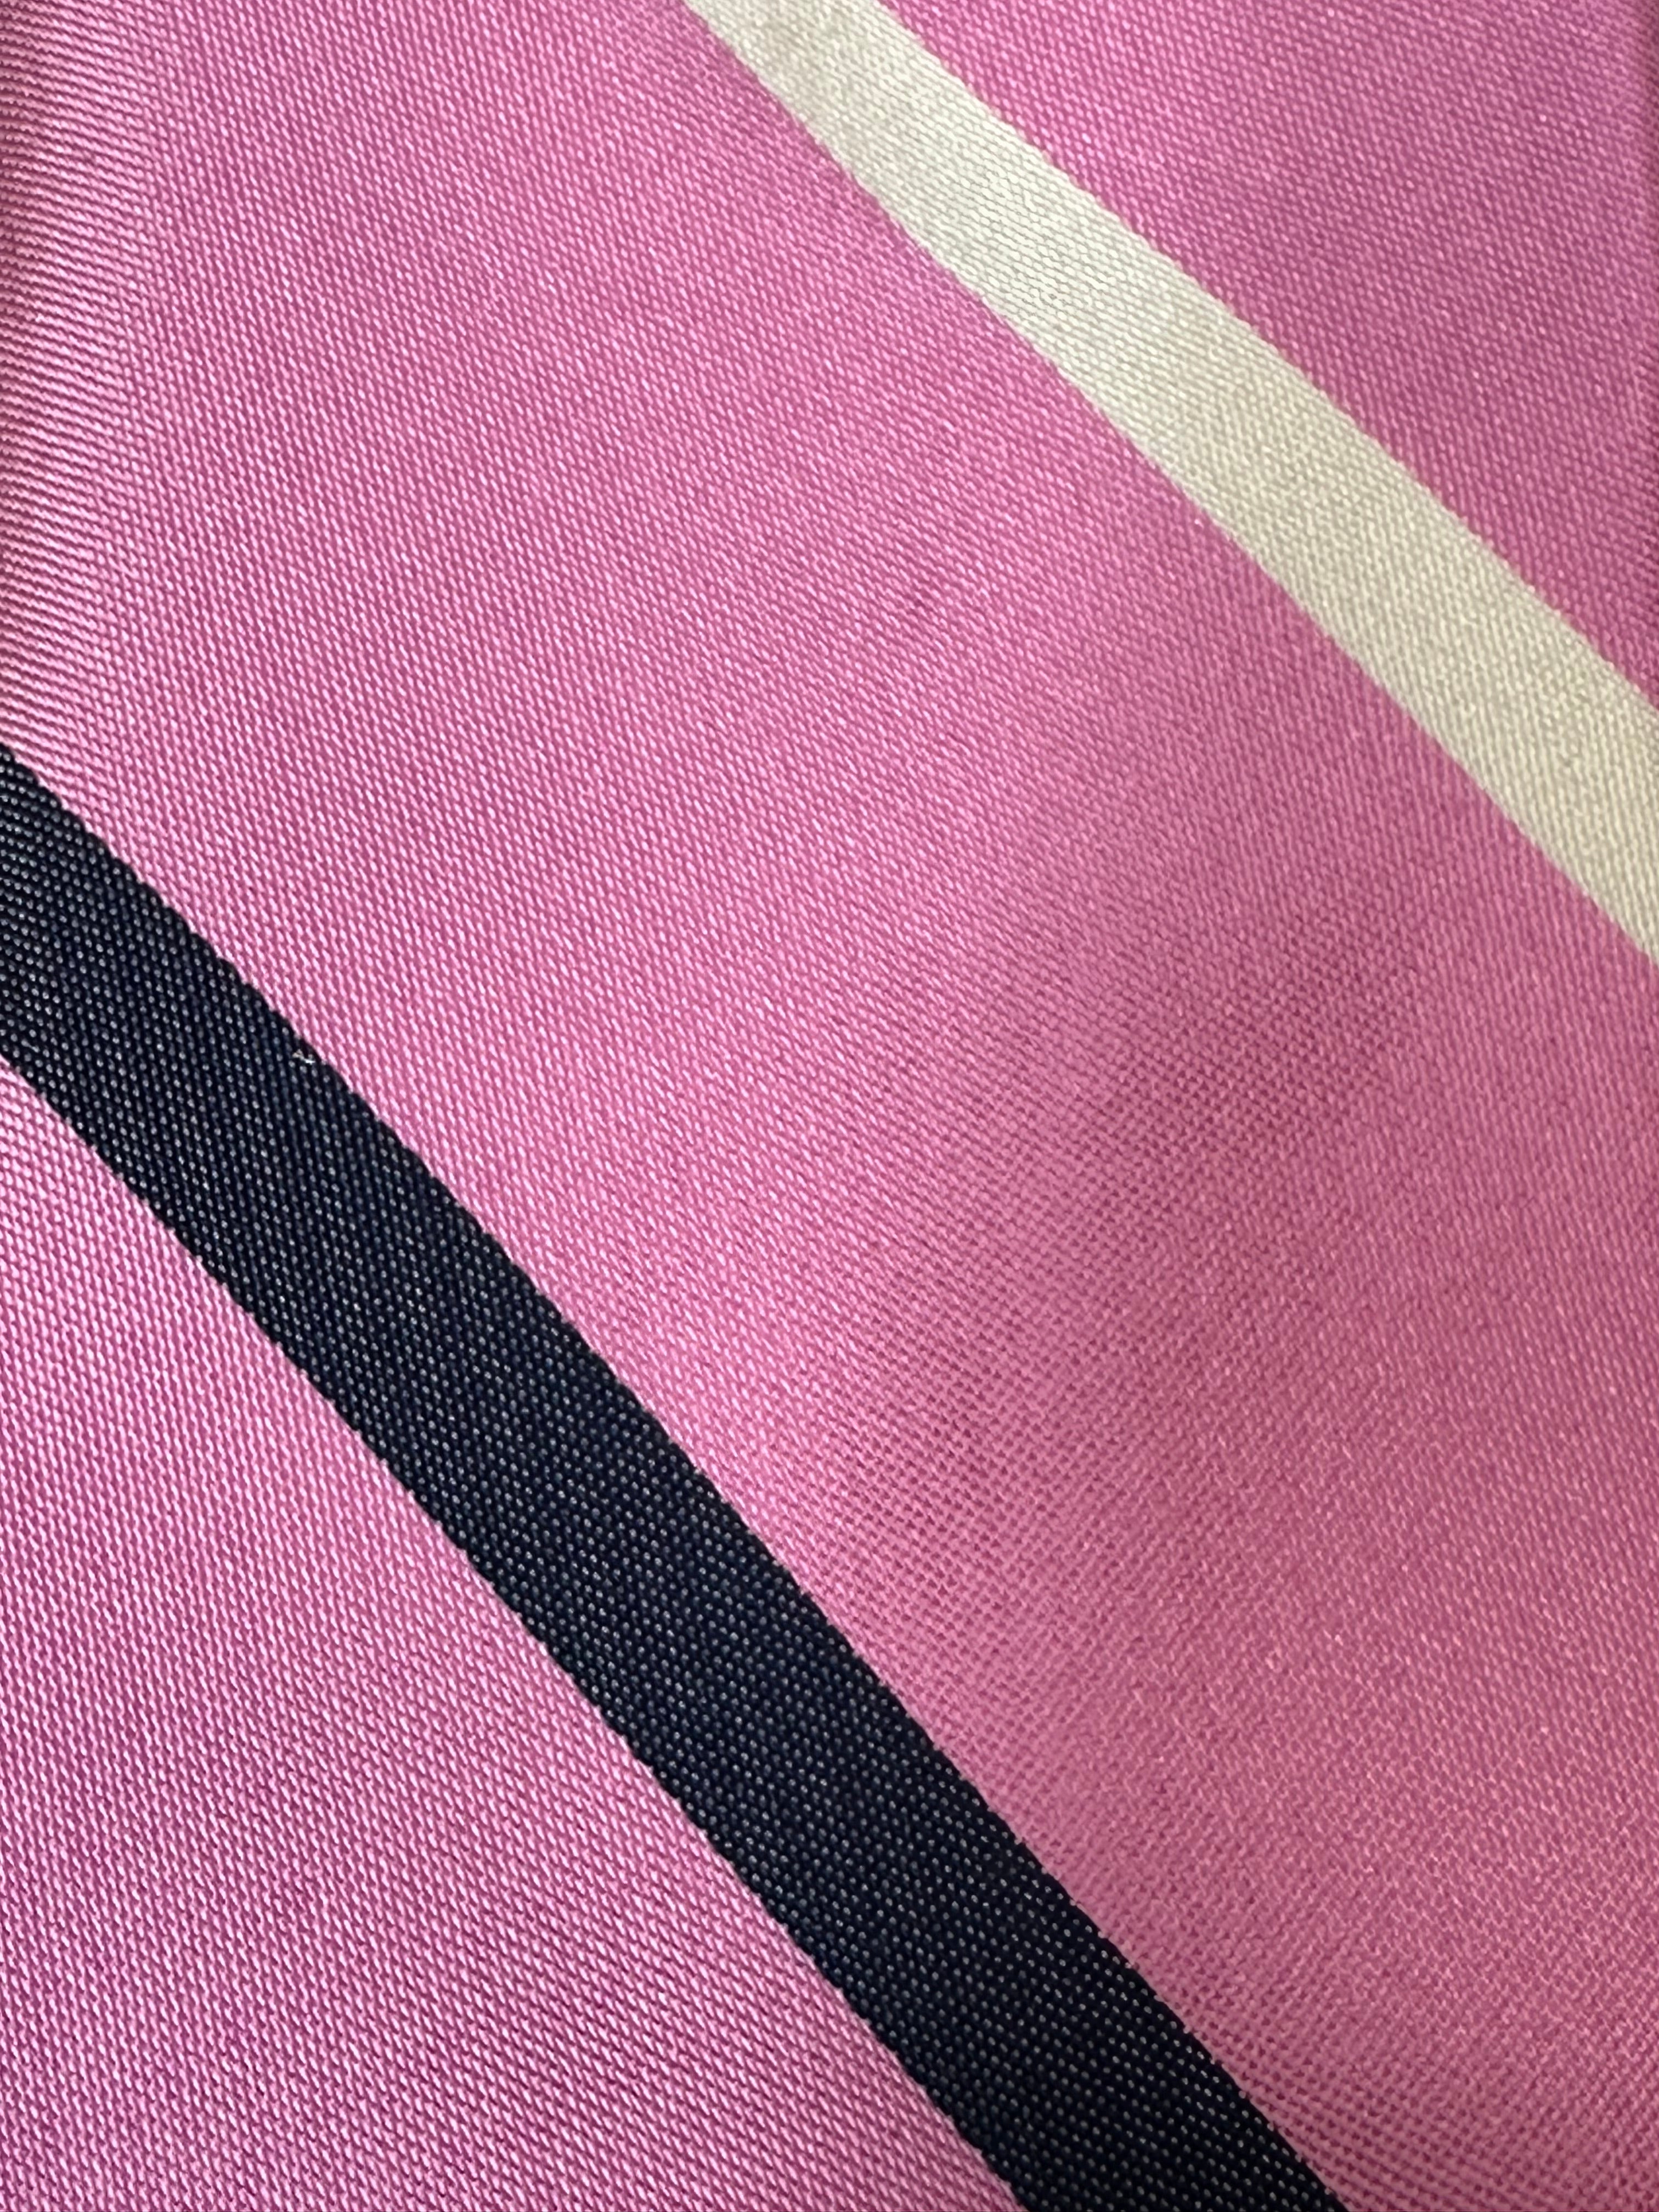 Brighton Pink Stripe Tie